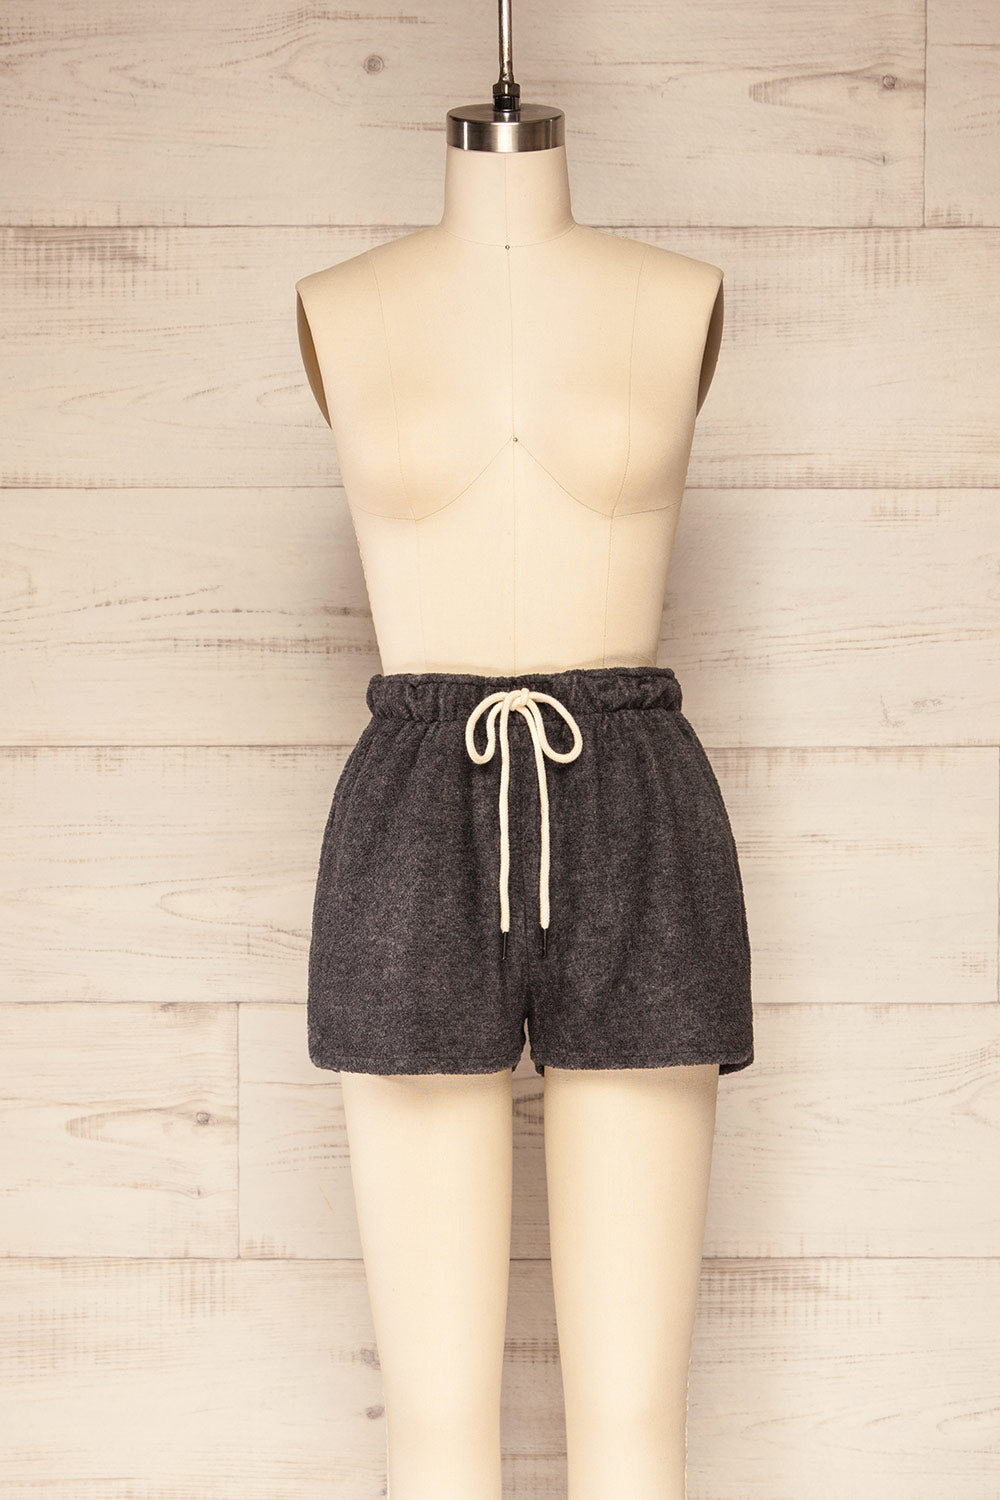 Set Jesen Charcoal Long Sleeve Top & Shorts | La petite garçonne front view